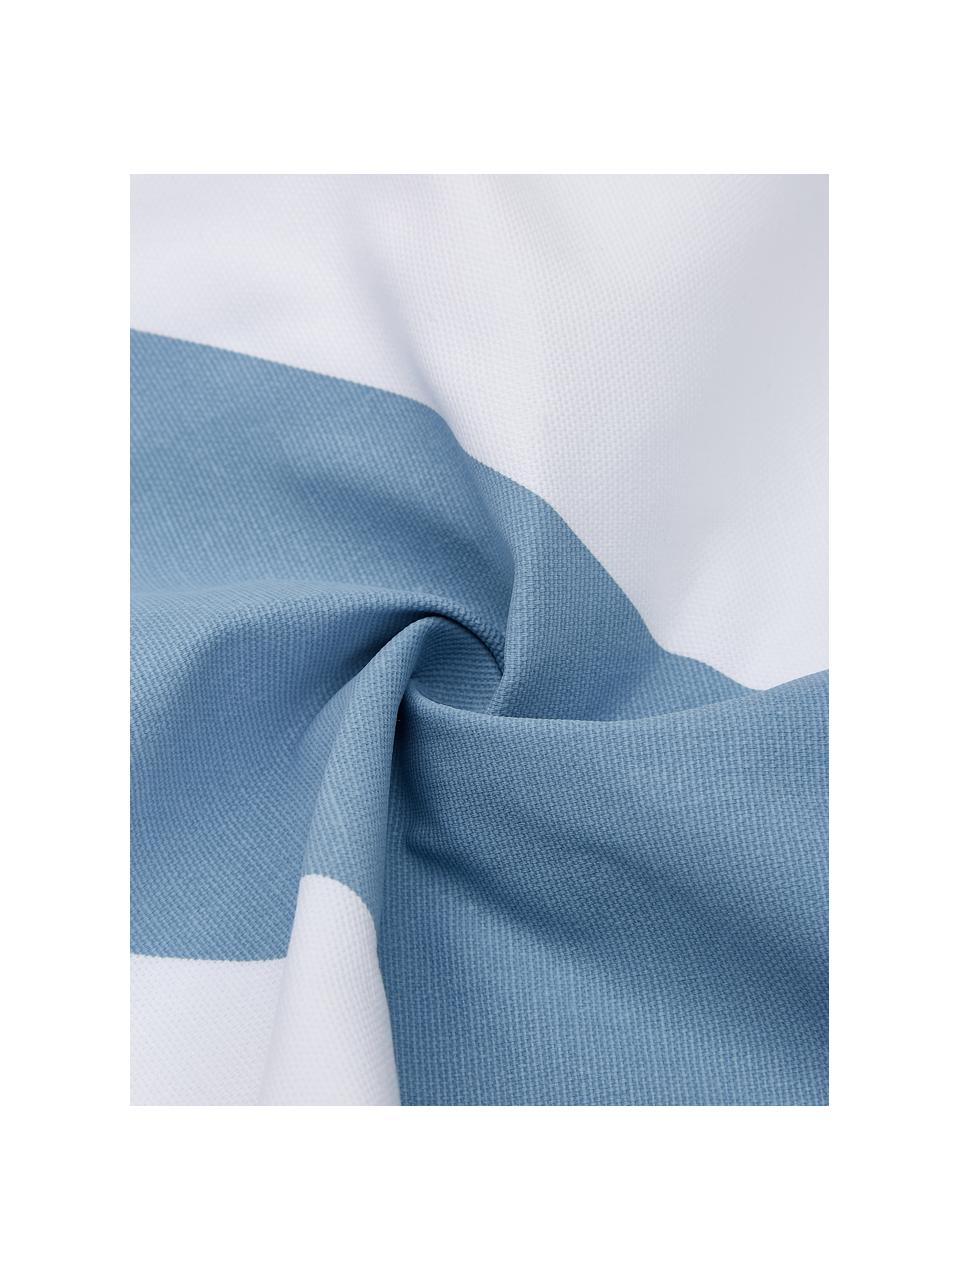 Poszewka na poduszkę Ren, 100% bawełna, Biały, jasny niebieski, S 30 x D 50 cm